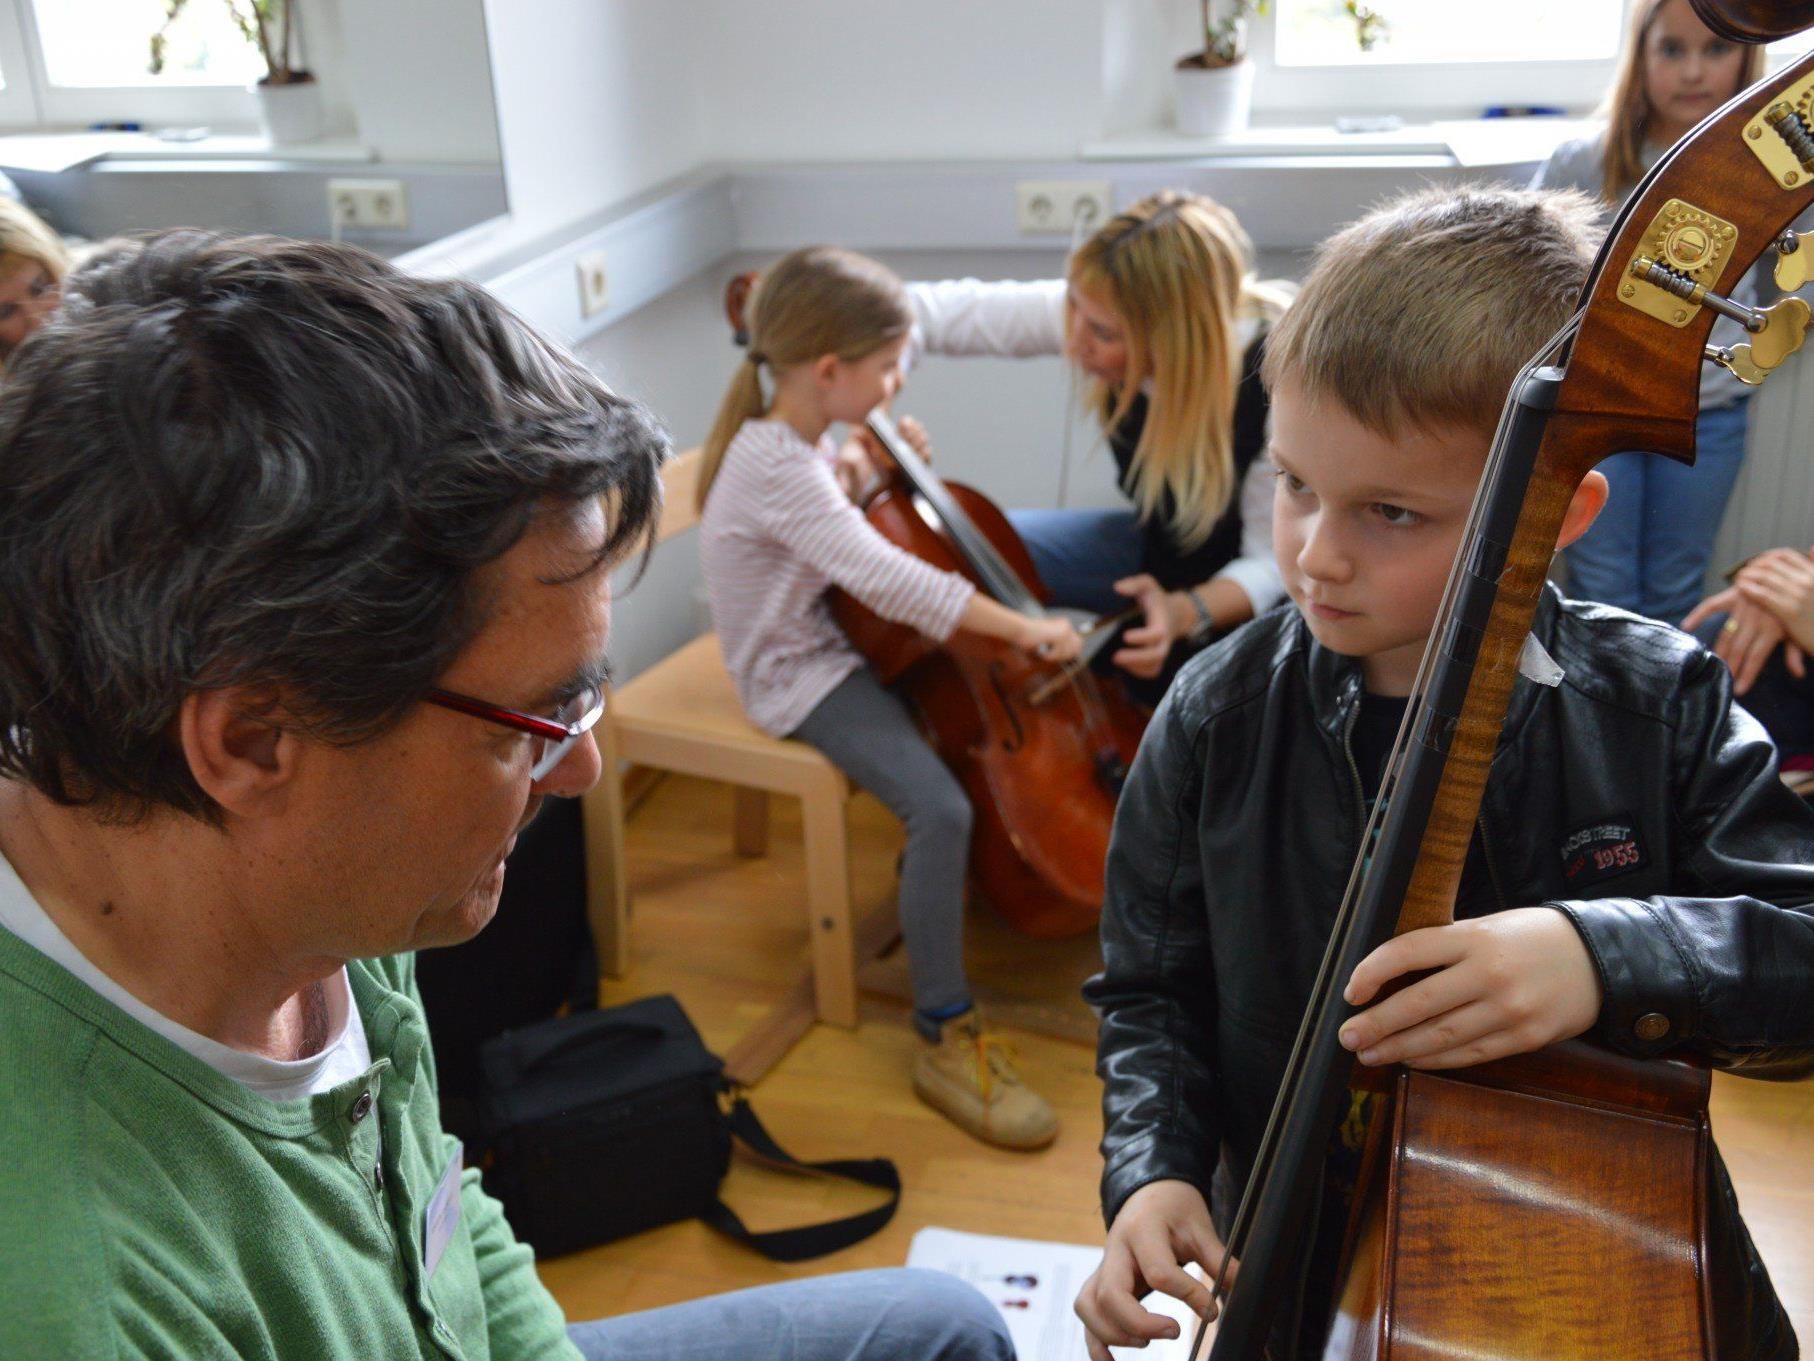 Tag der offenen Tür in der Rheintalischen Musikschule